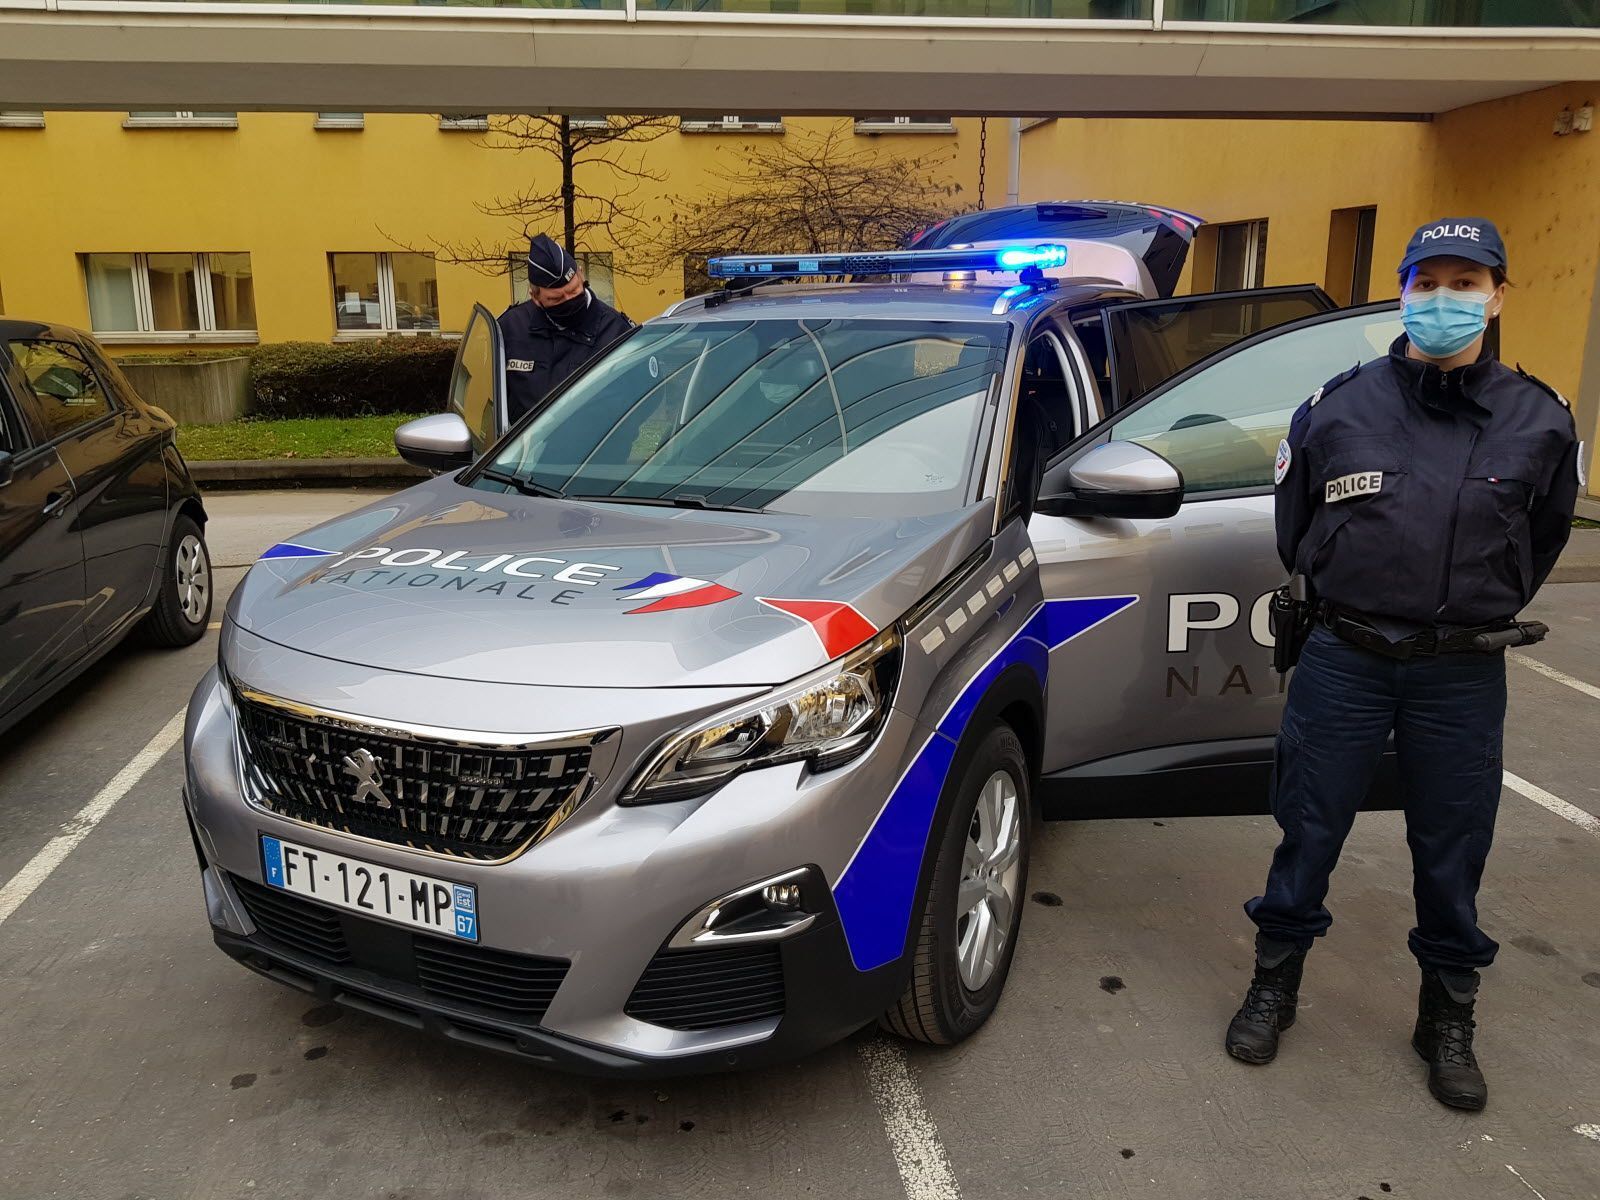 Villefranche-sur-Saône : DEUX POLICIERS BLESSÉS DANS UN ACCIDENT DE VOITURE